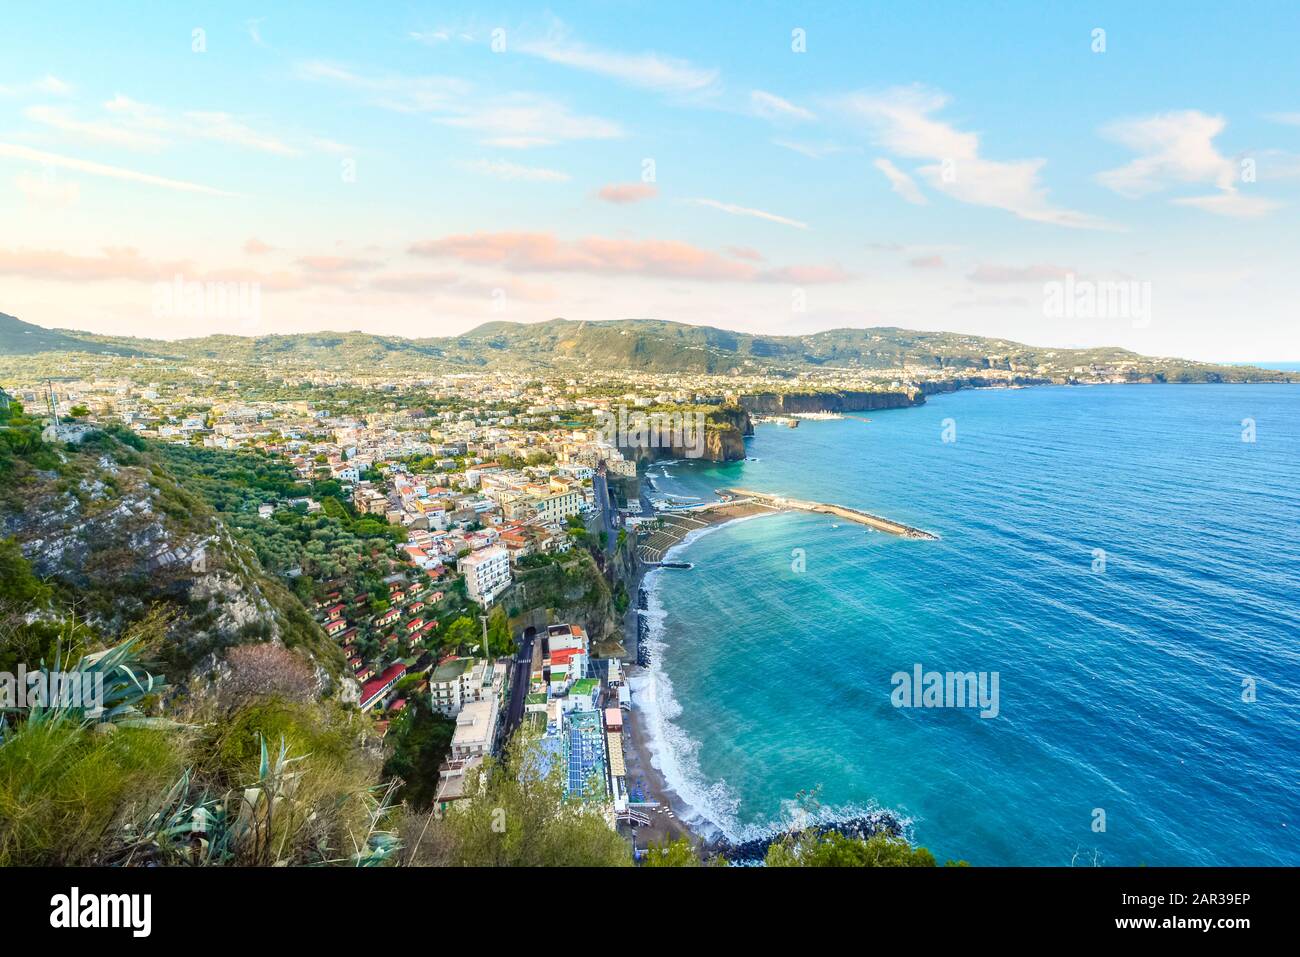 Vista dalla Costiera Amalfitana, viaggia sulla città di Sorrento, Italia, sul Mar Mediterraneo e sulla Penisola Sorrentina in una mattinata estiva. Foto Stock